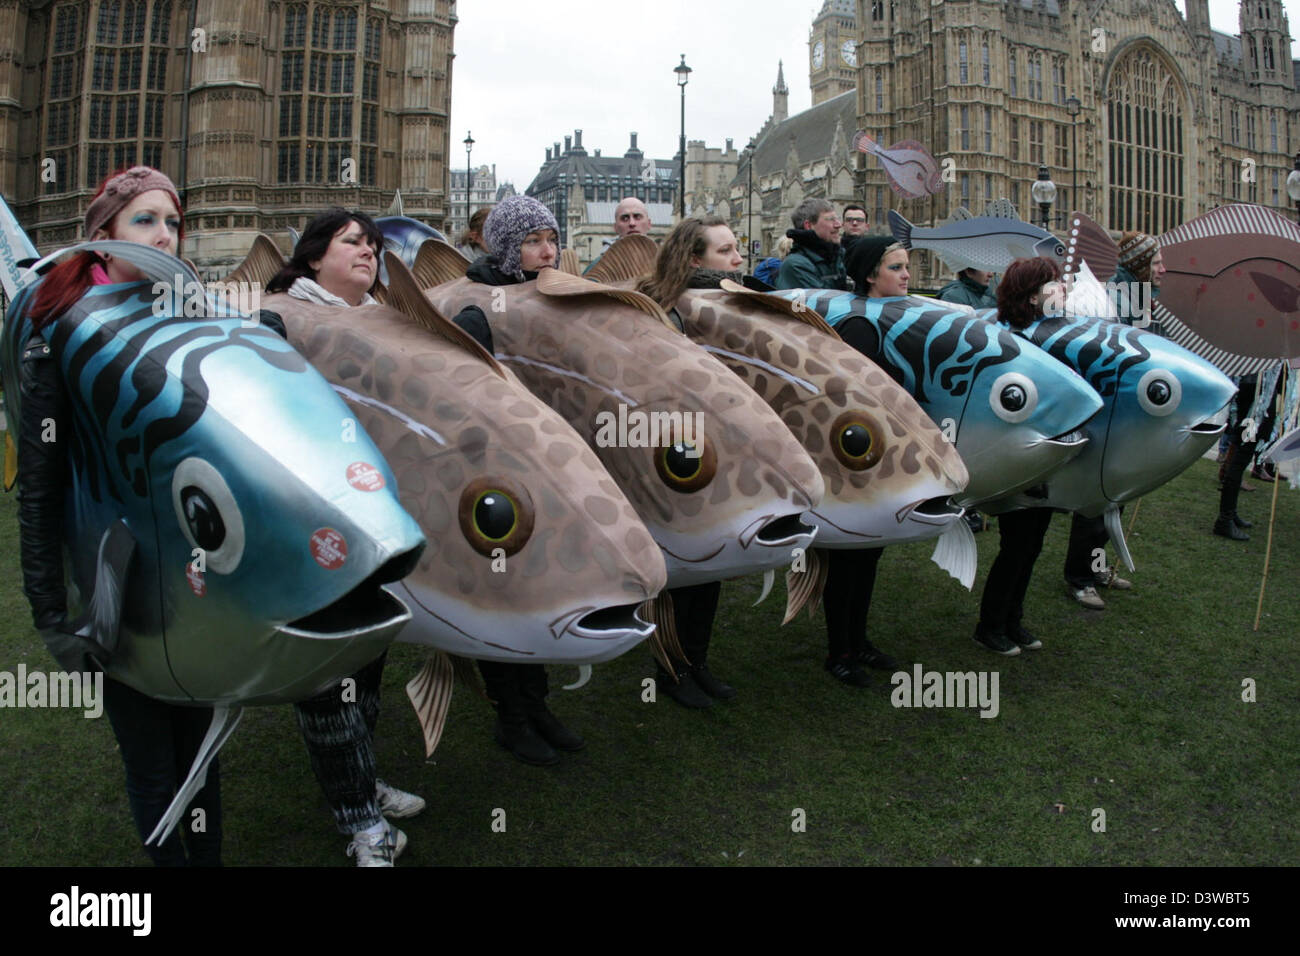 Fish costumes immagini e fotografie stock ad alta risoluzione - Alamy